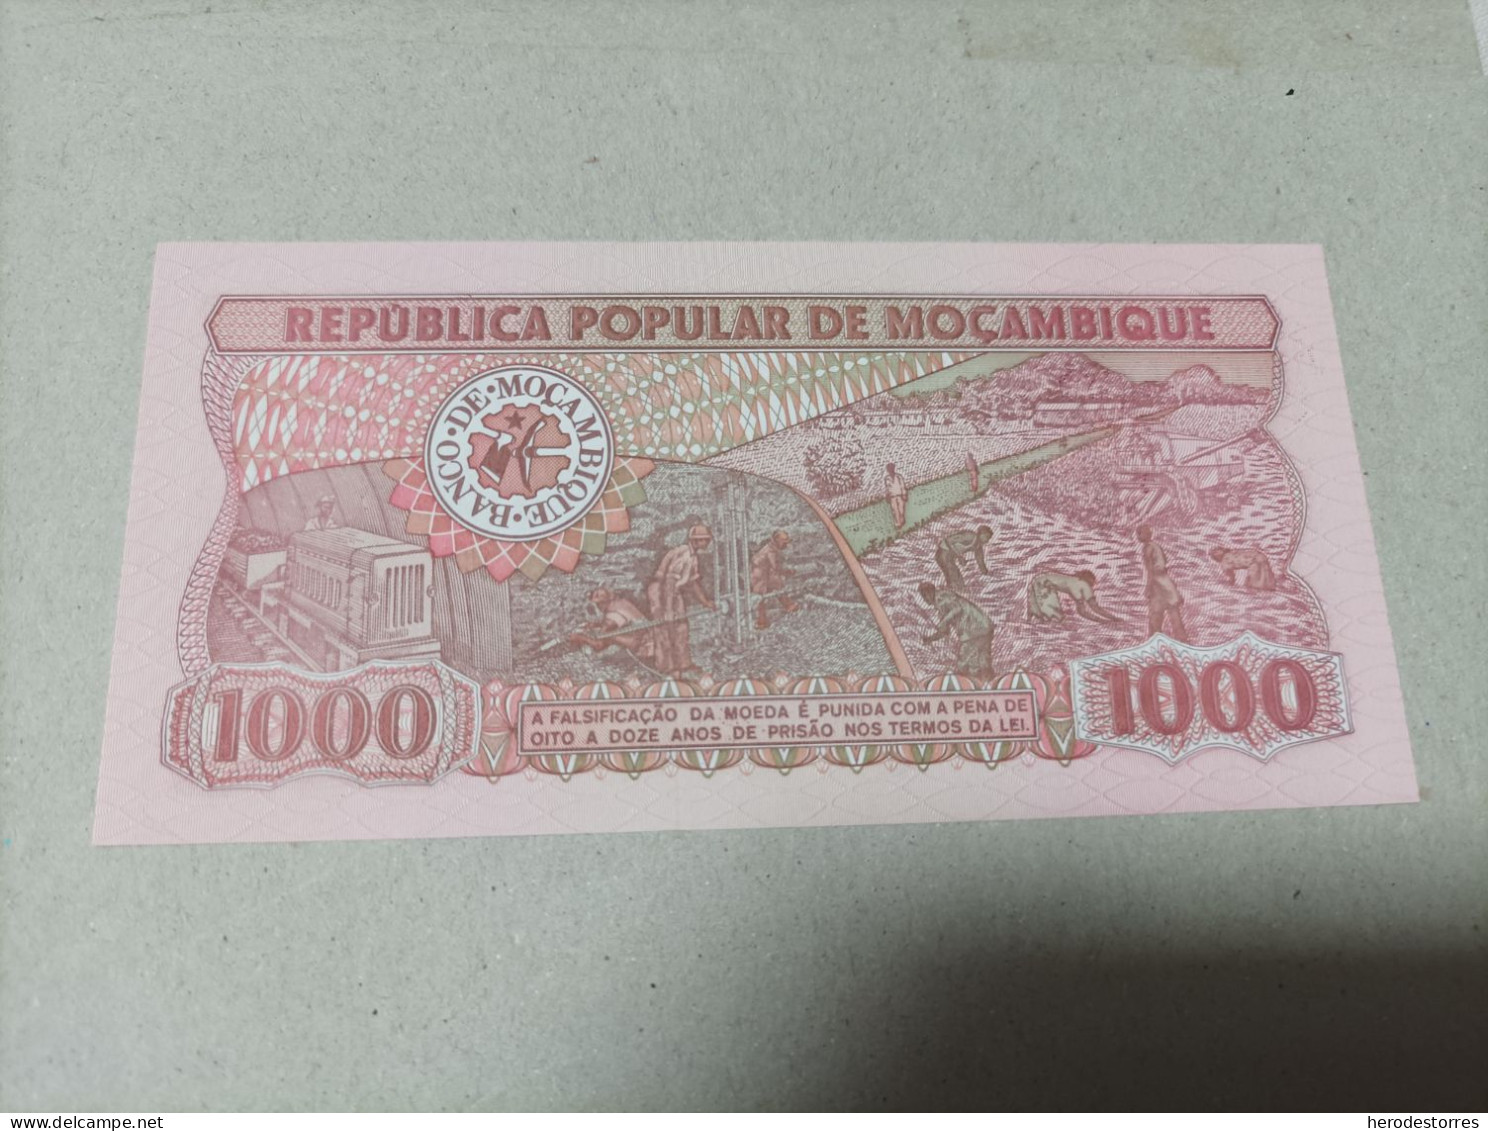 Billete Mozambique 1000 Meticais, Nº Bajisimo 0026783, Año 1989, UNC - Mozambique